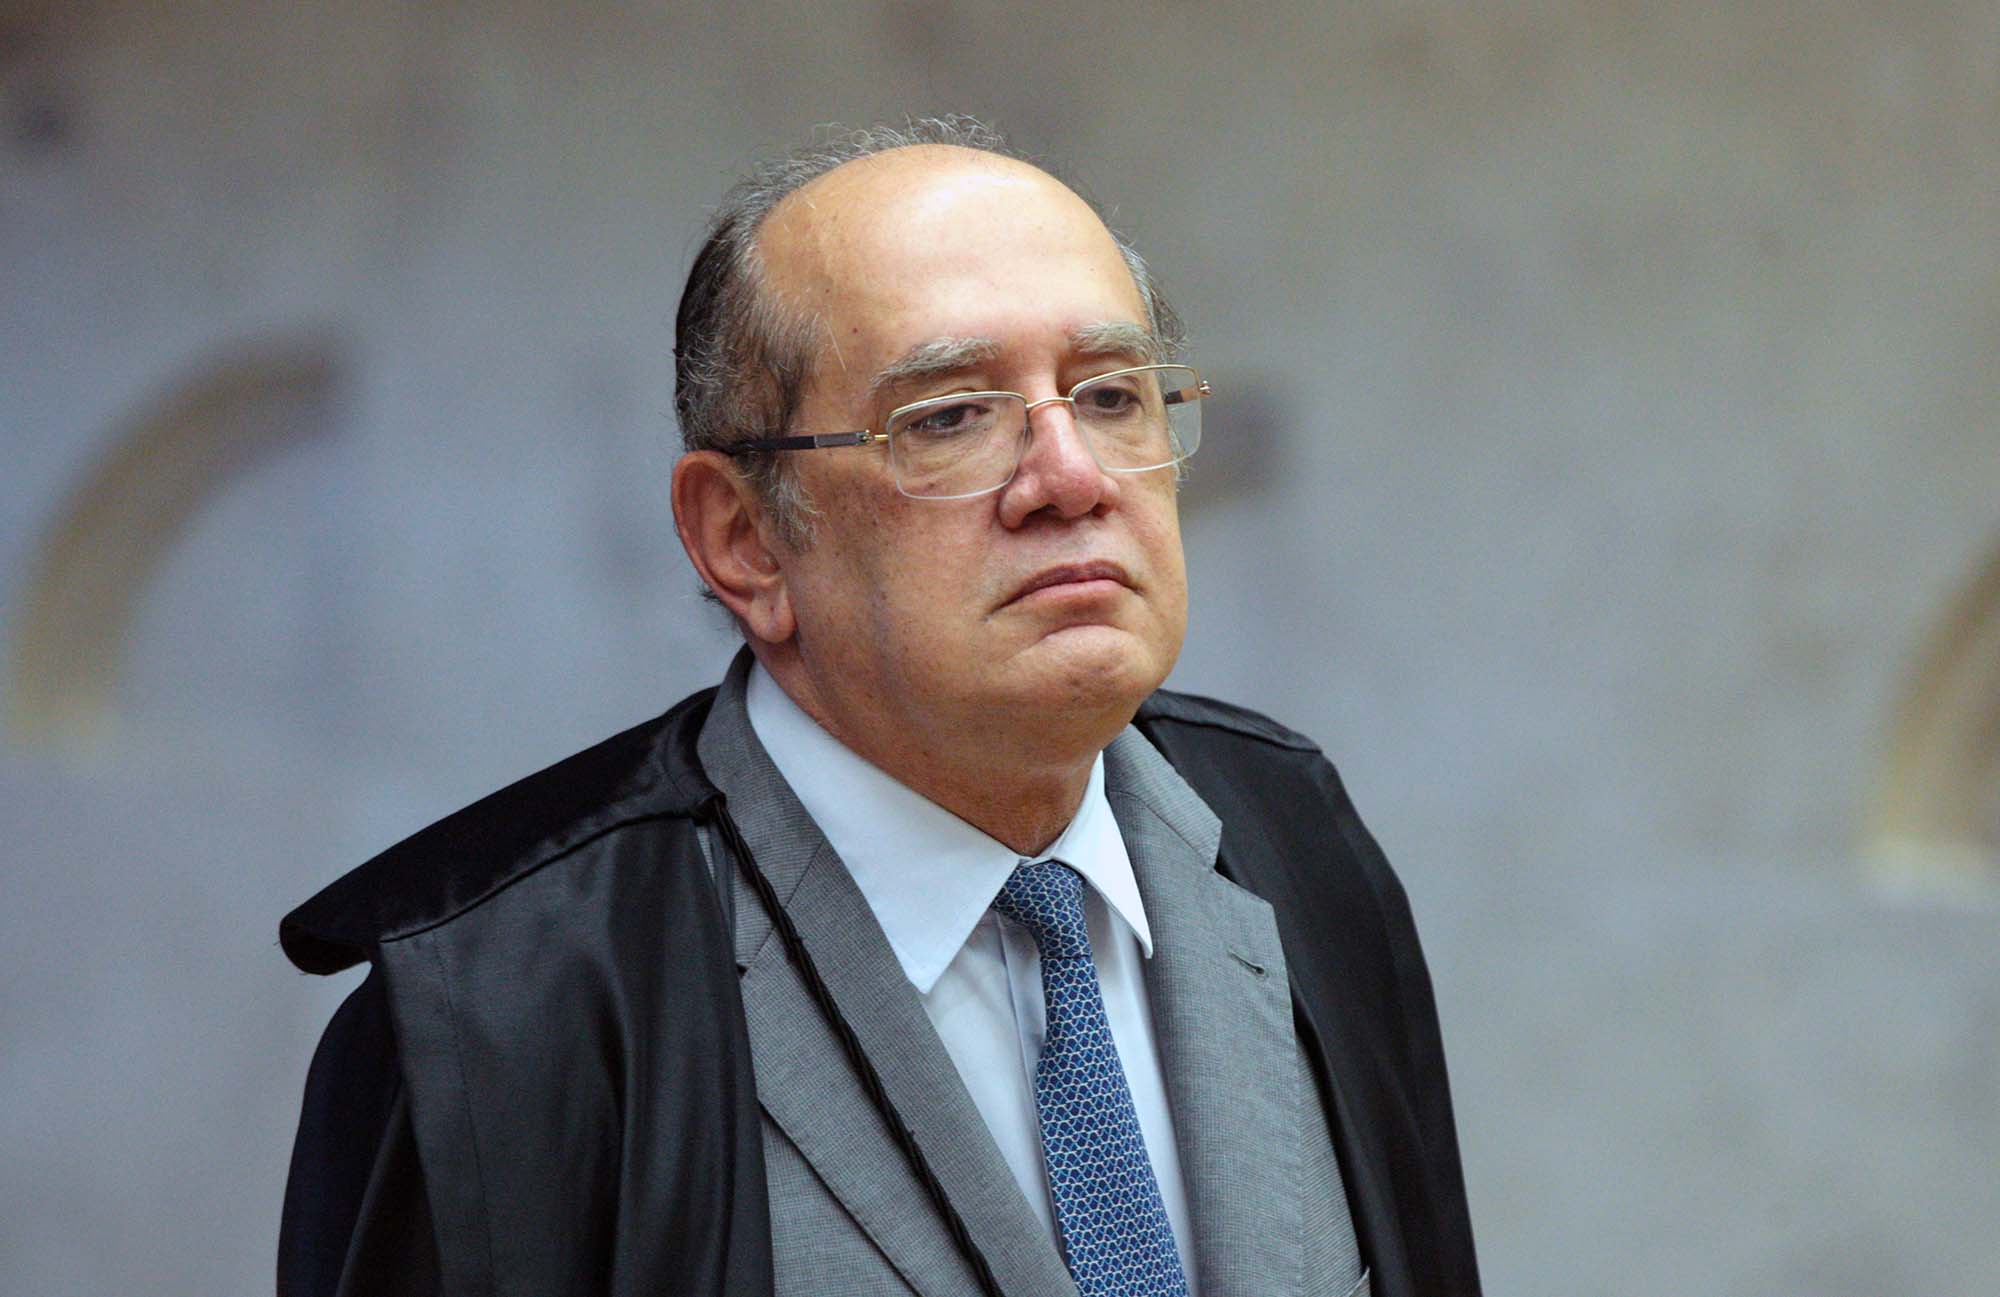 Barroso e Gilmar Mendes batem boca no Supremo sobre investigação contra políticos